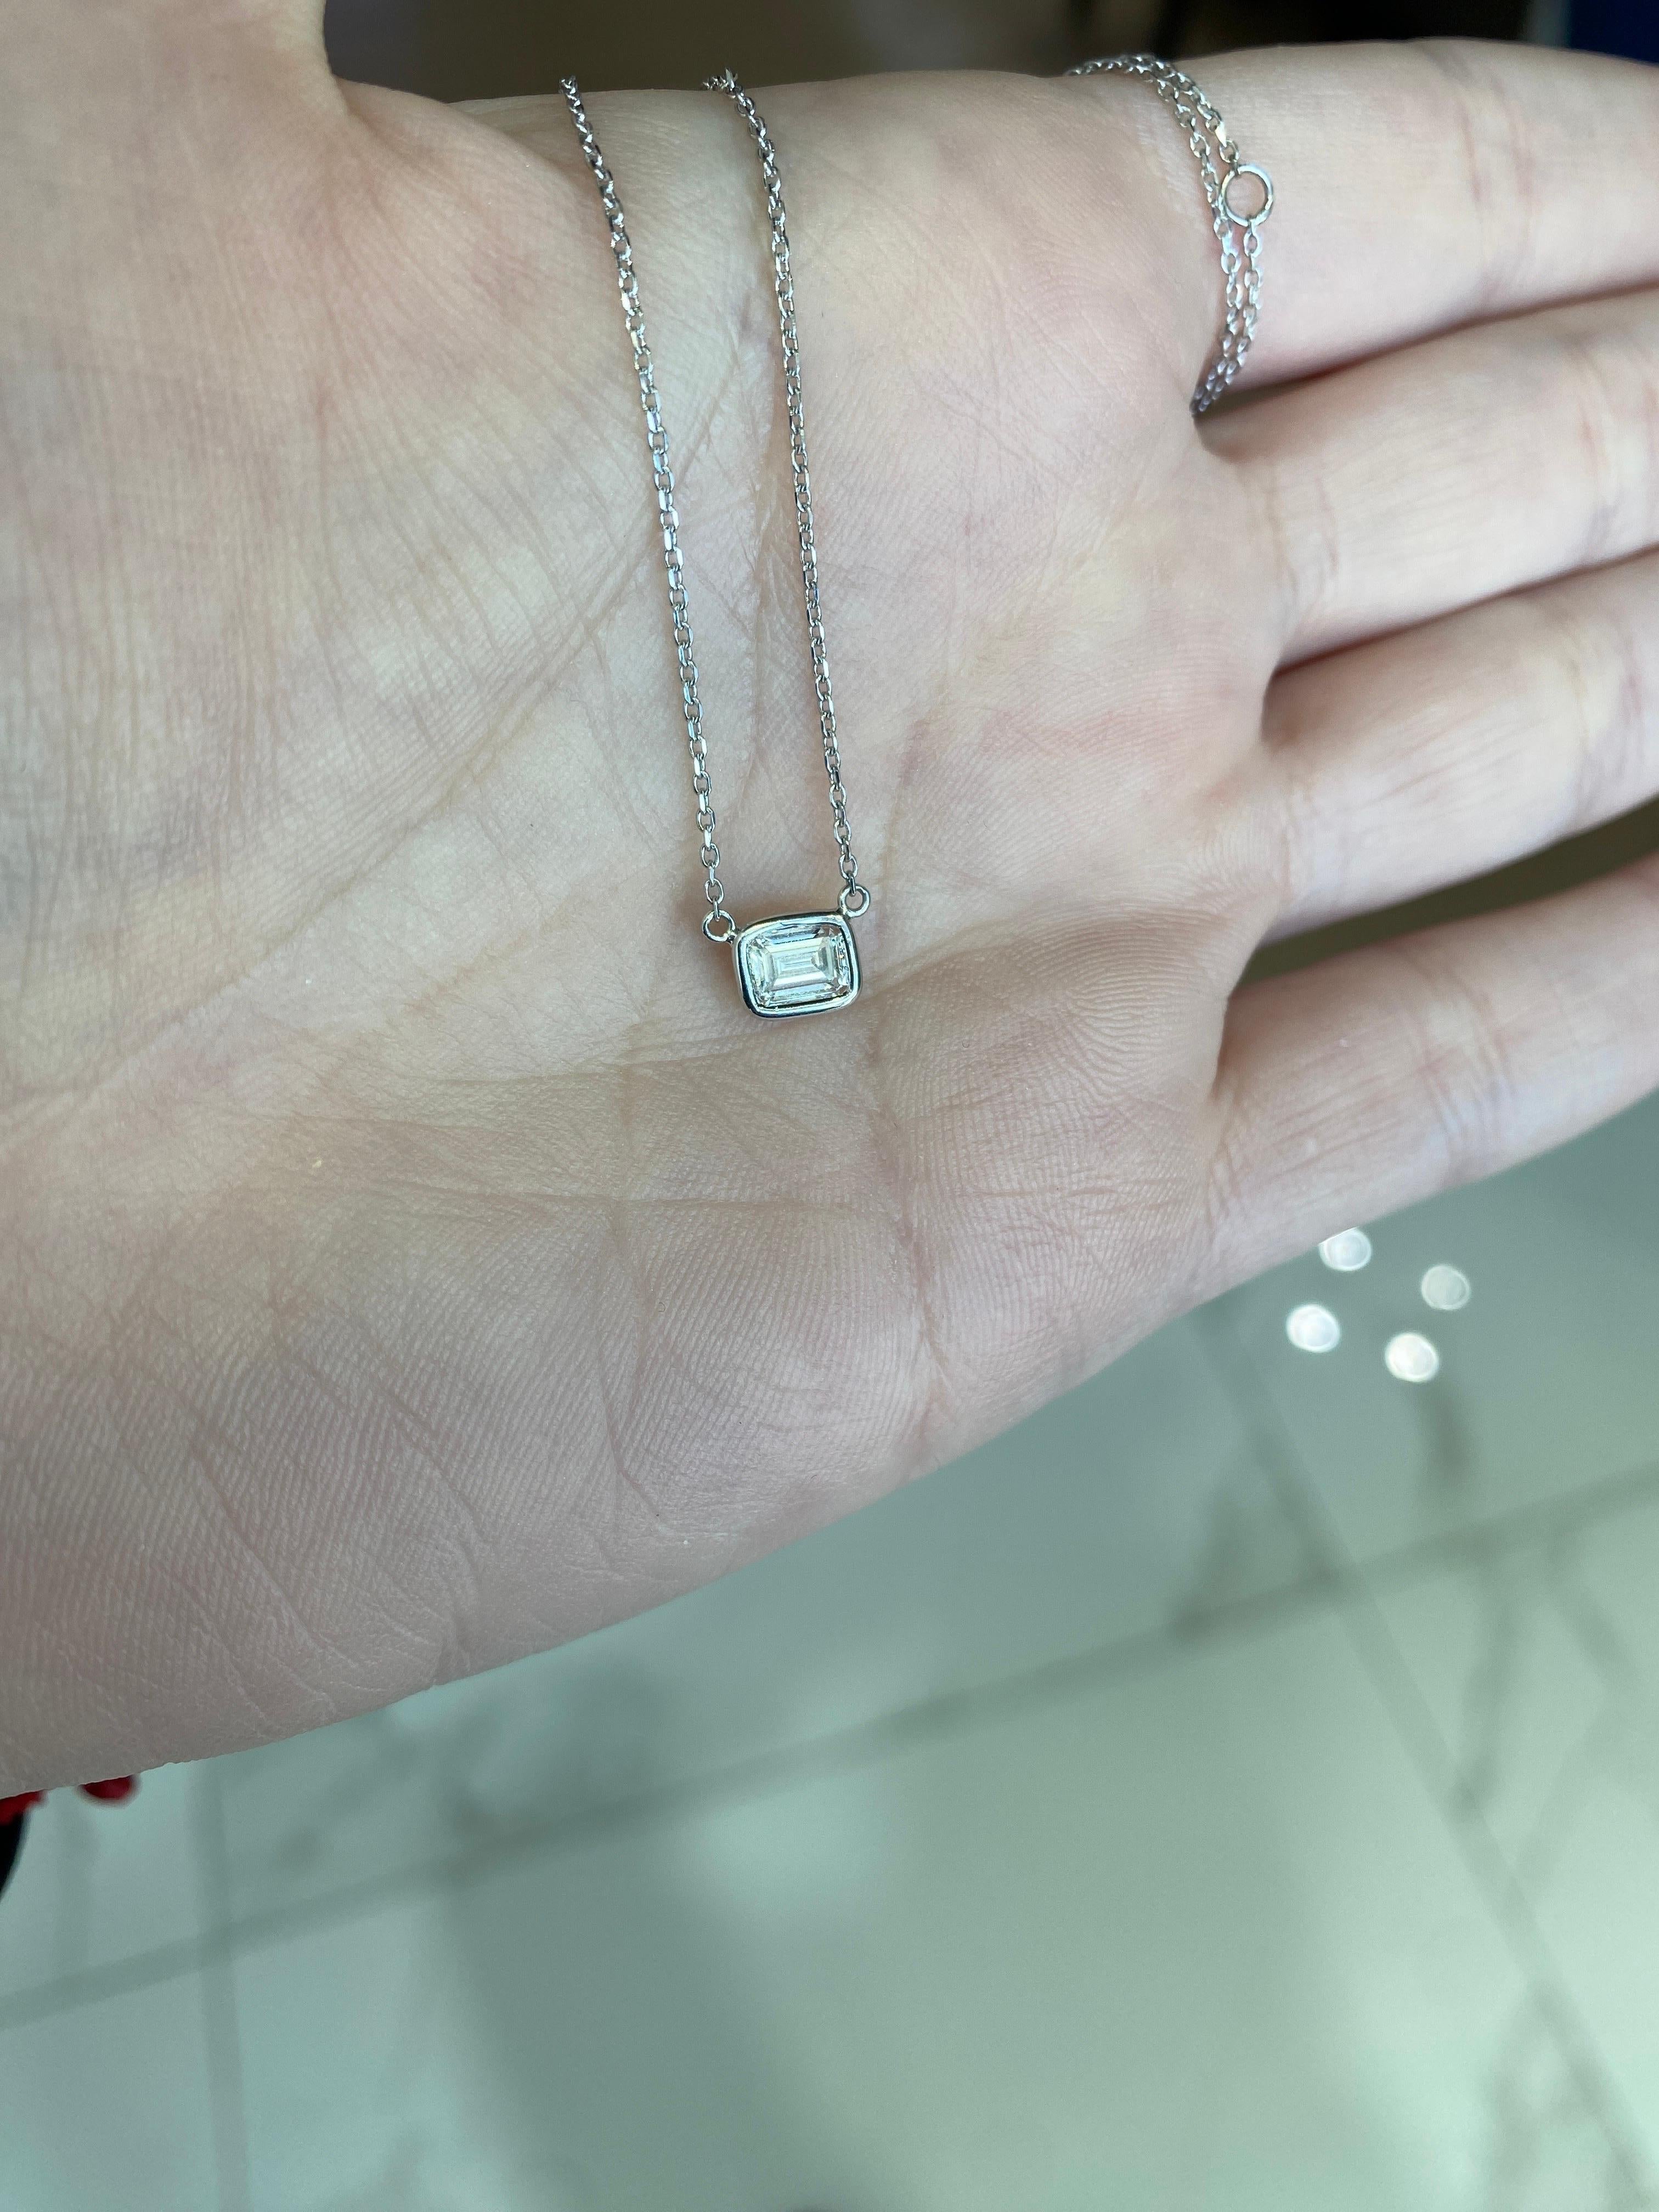 0.44 Carat Natural Emerald Cut Bezel Set Diamond Pendant Necklace 14k White Gold For Sale 1